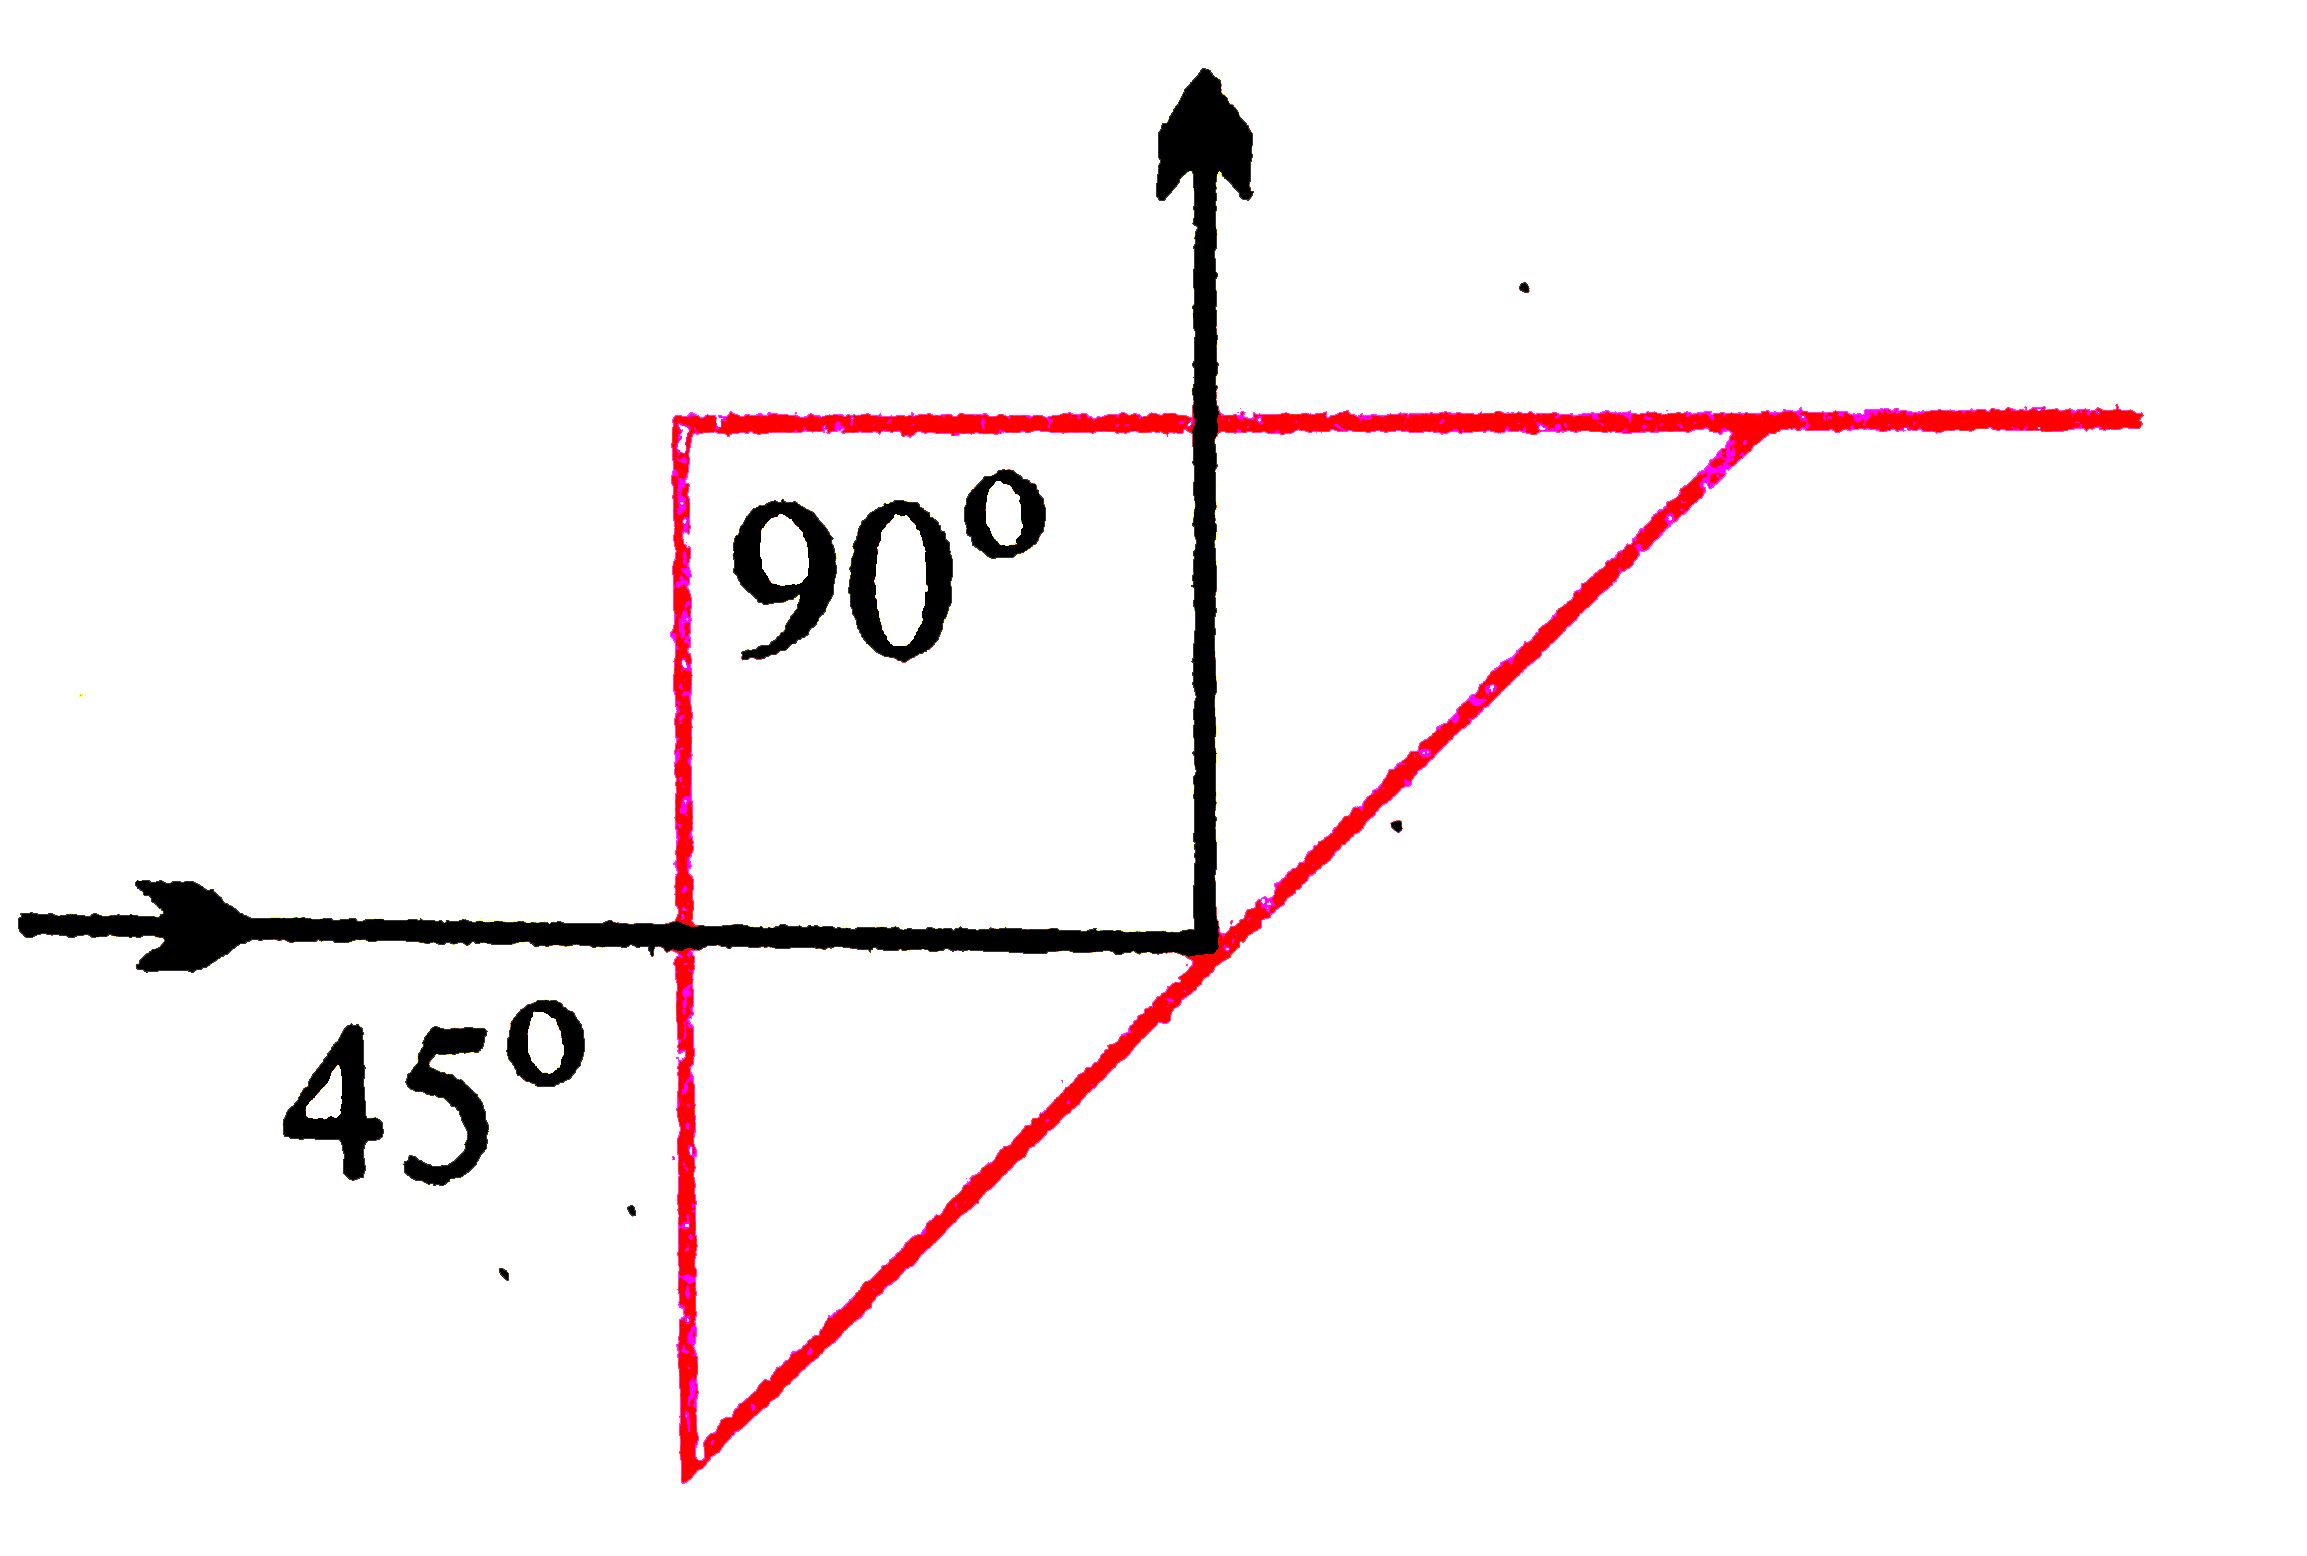 चित्र में एक समकोणिक प्रिज्म प्रदर्शित किया गया है। इसके एक पृष्ठ पर लंबवत आपतित होने वाली किरण का पूर्ण परावर्तन हो जाता है। काँच के न्यूनतम अपवर्तनांक की गणना कीजिए।